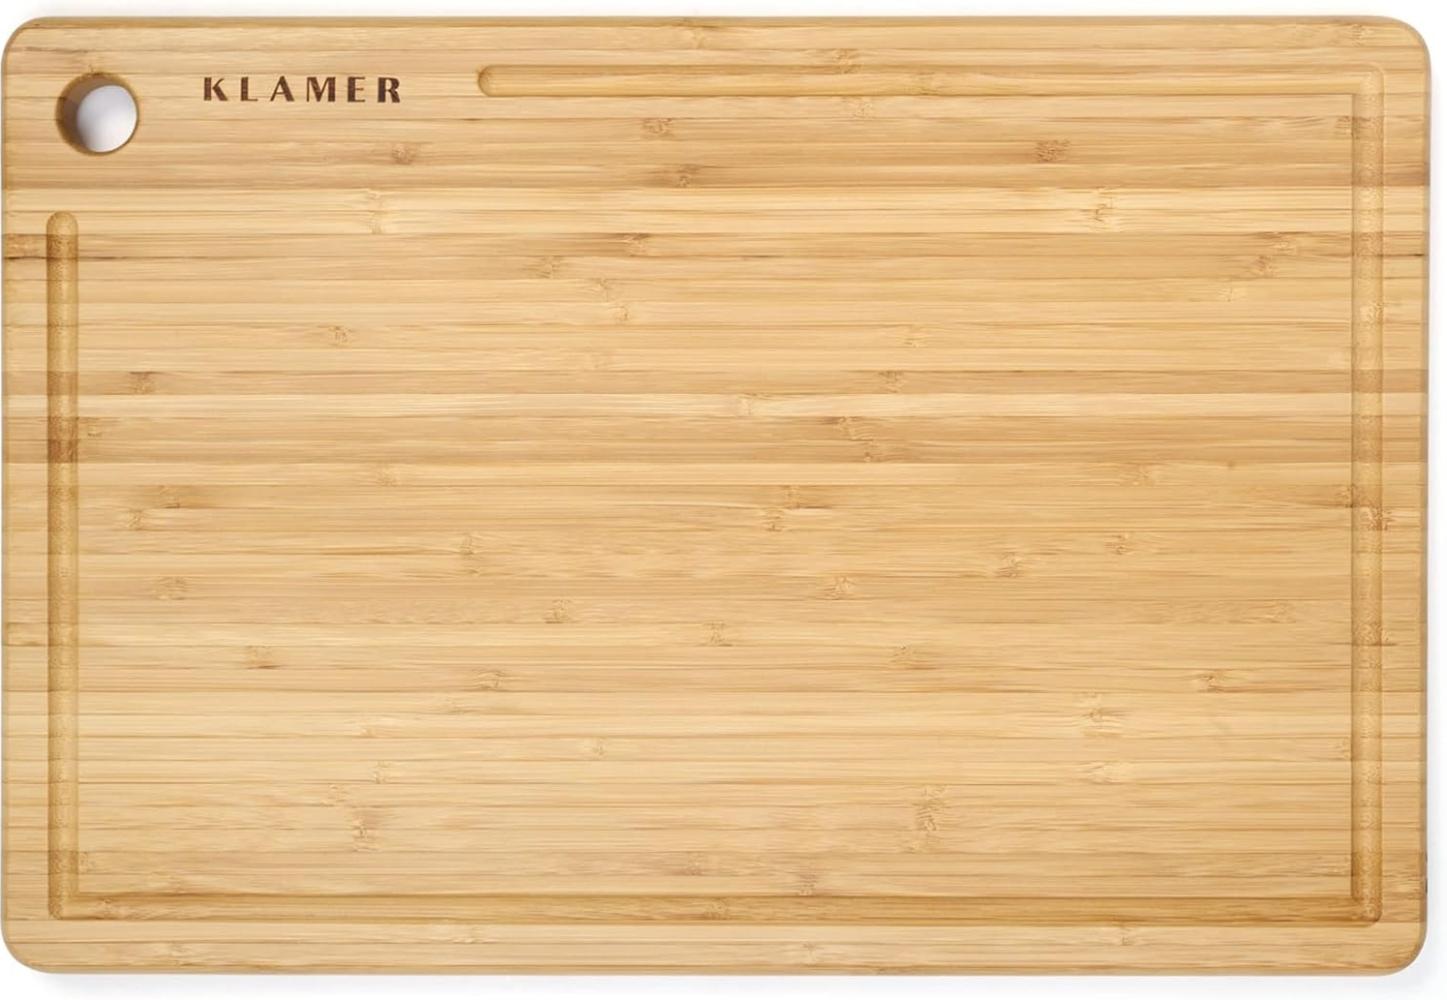 KLAMER Schneidebrett Bambus rutschfest mit Saftrille – Premium Holz-Brett, 45x30x2cm, leicht reinigbar, antiseptisch, umweltfreundlich, Natur-Holz 38 x 25 cm Bild 1